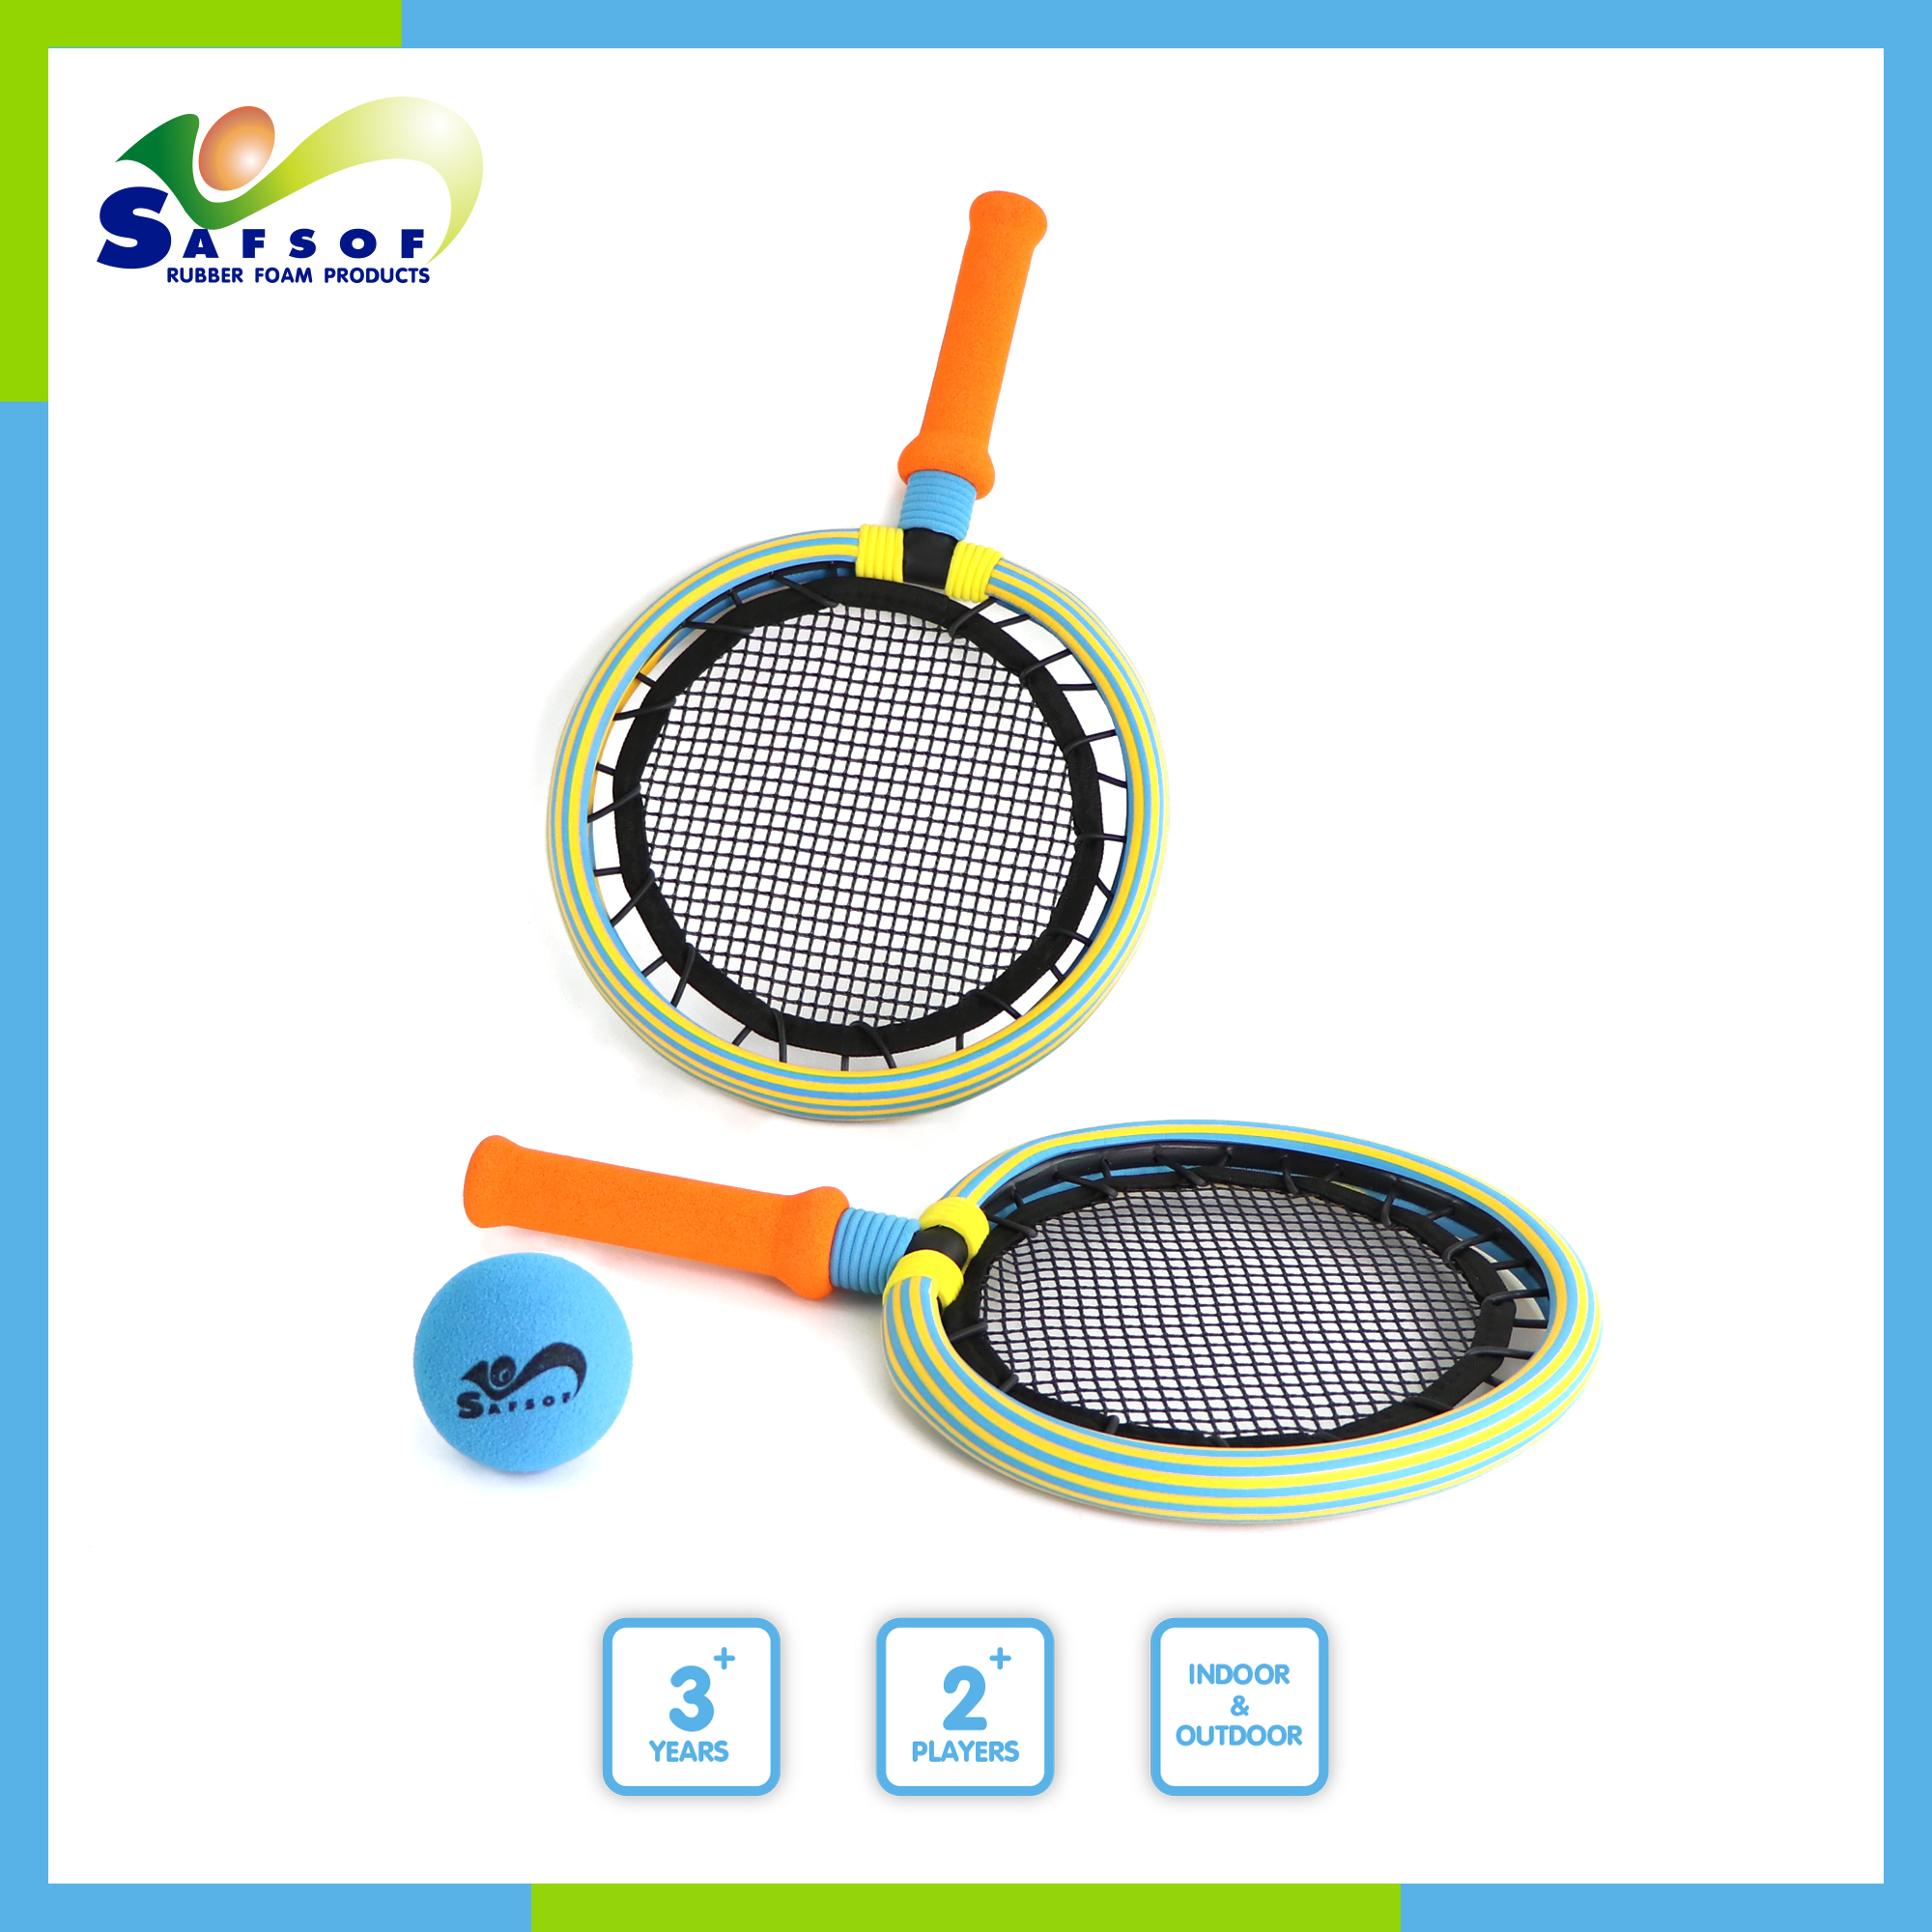 Safsof badminton racket toy ชุดของเล่นไม้แร็กเกตแบดมินตันสำหรับเด็กอายุ 3 ปีขึ้นไป พร้อมลูกบอล รุ่น BSK-05(B) ของเล่นเสริมพัฒนาการ ของเล่นปลอดภัย